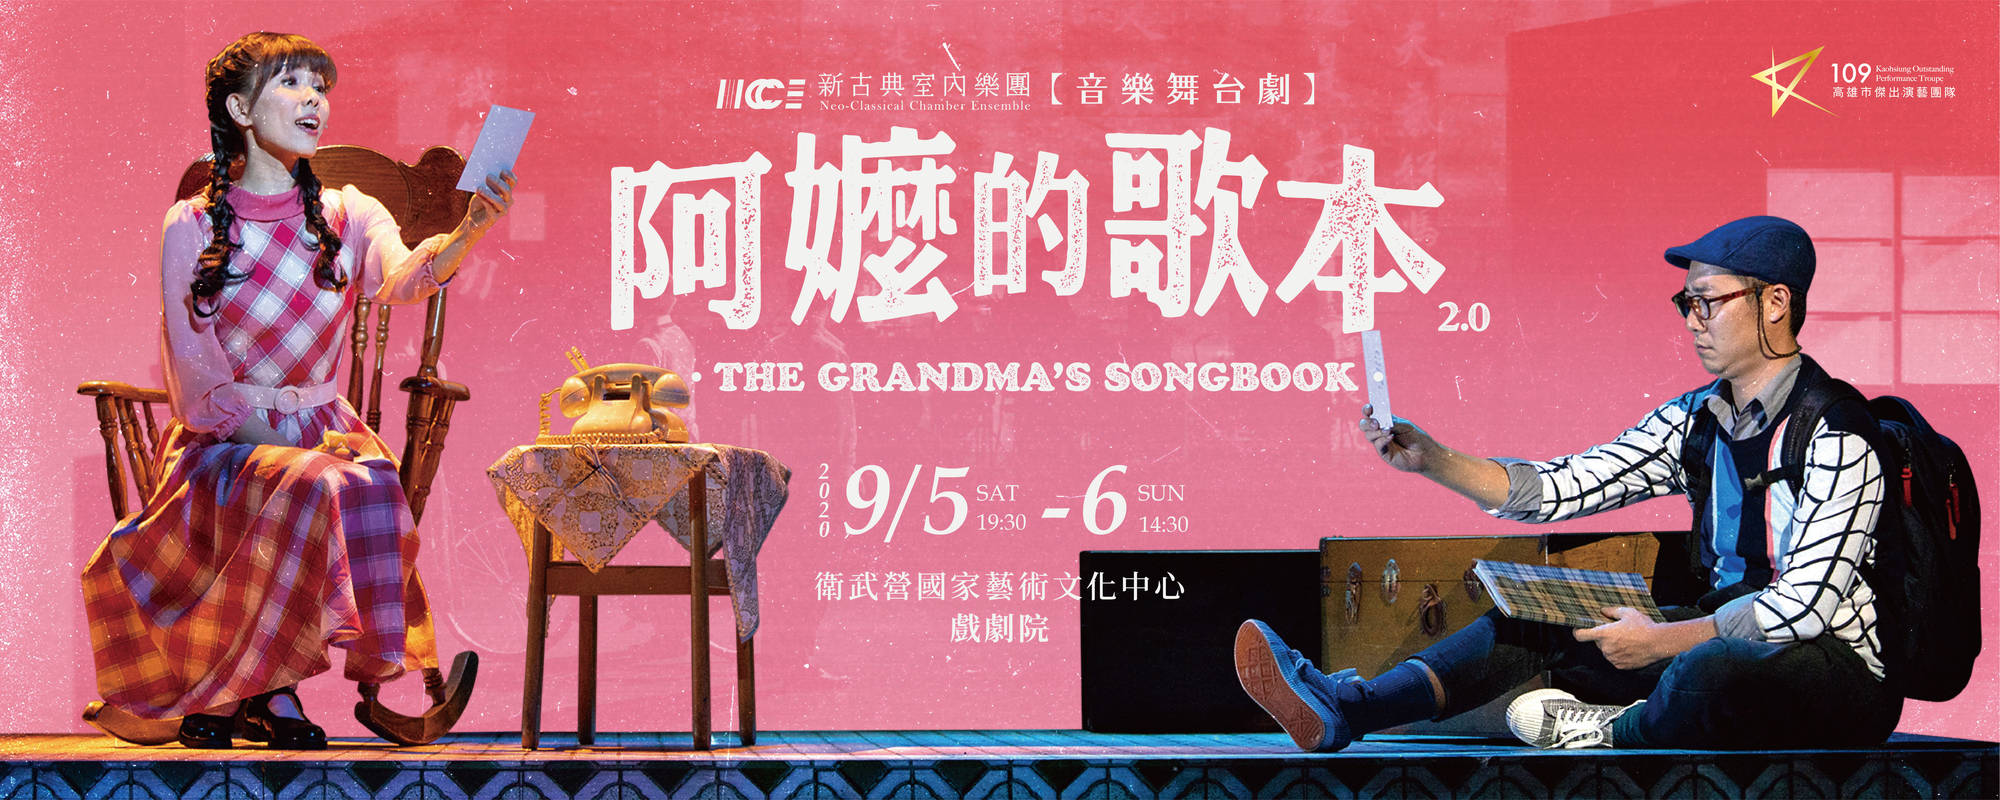 音樂舞台劇-阿嬤的歌本 The Grandma’s Songbook